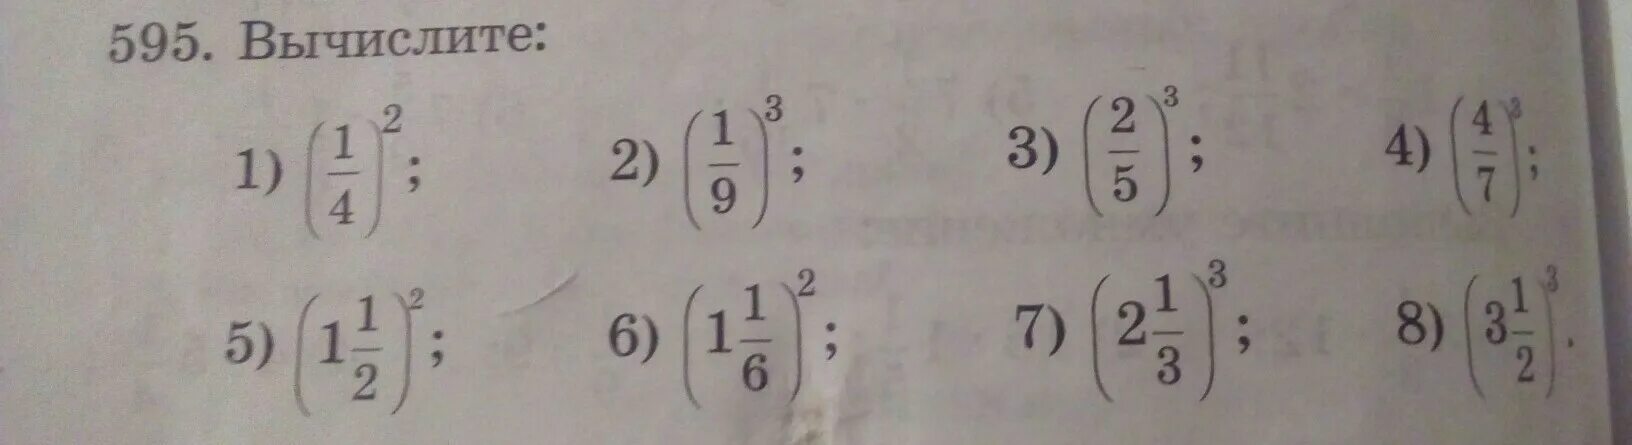 Вычислите 2 4 9 9 12. Вычислить 1-1/2. Вычислите (1 1 3). Вычислите (1-2). Вычислите 1,1^4.